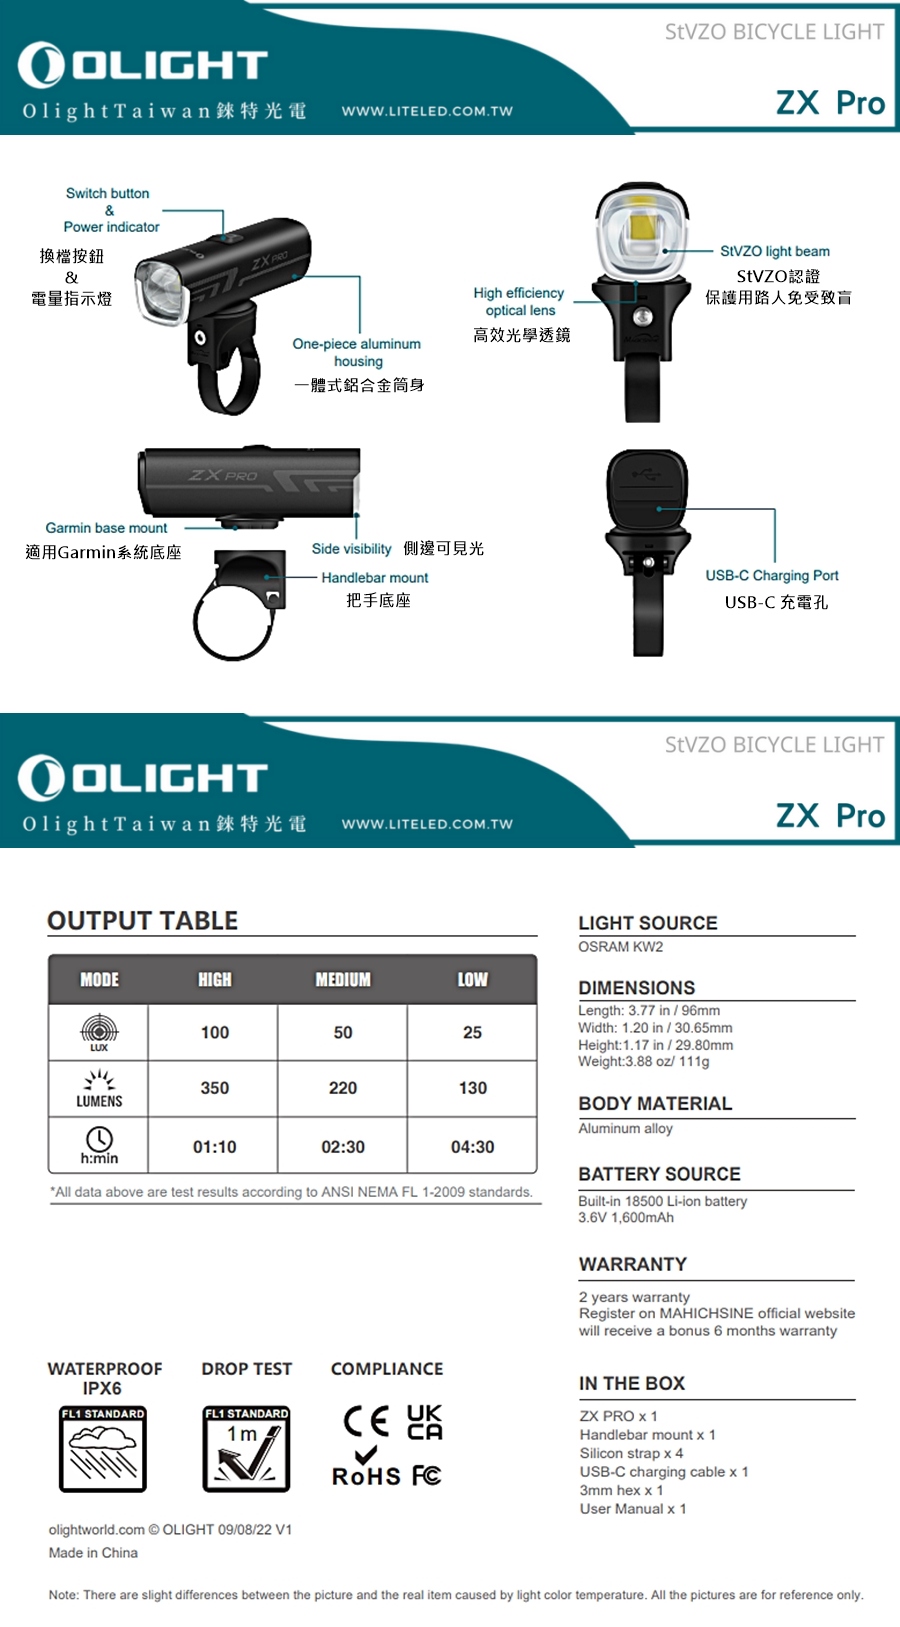 【錸特光電】OLIGHT ZX Pro (StVZO認證) 350流明 USB-C充電 LED自行車燈 Rechargeable LED Bike Light - 350 Lumens - Uses Built-in 1600mAh Li-ion Battery (2)